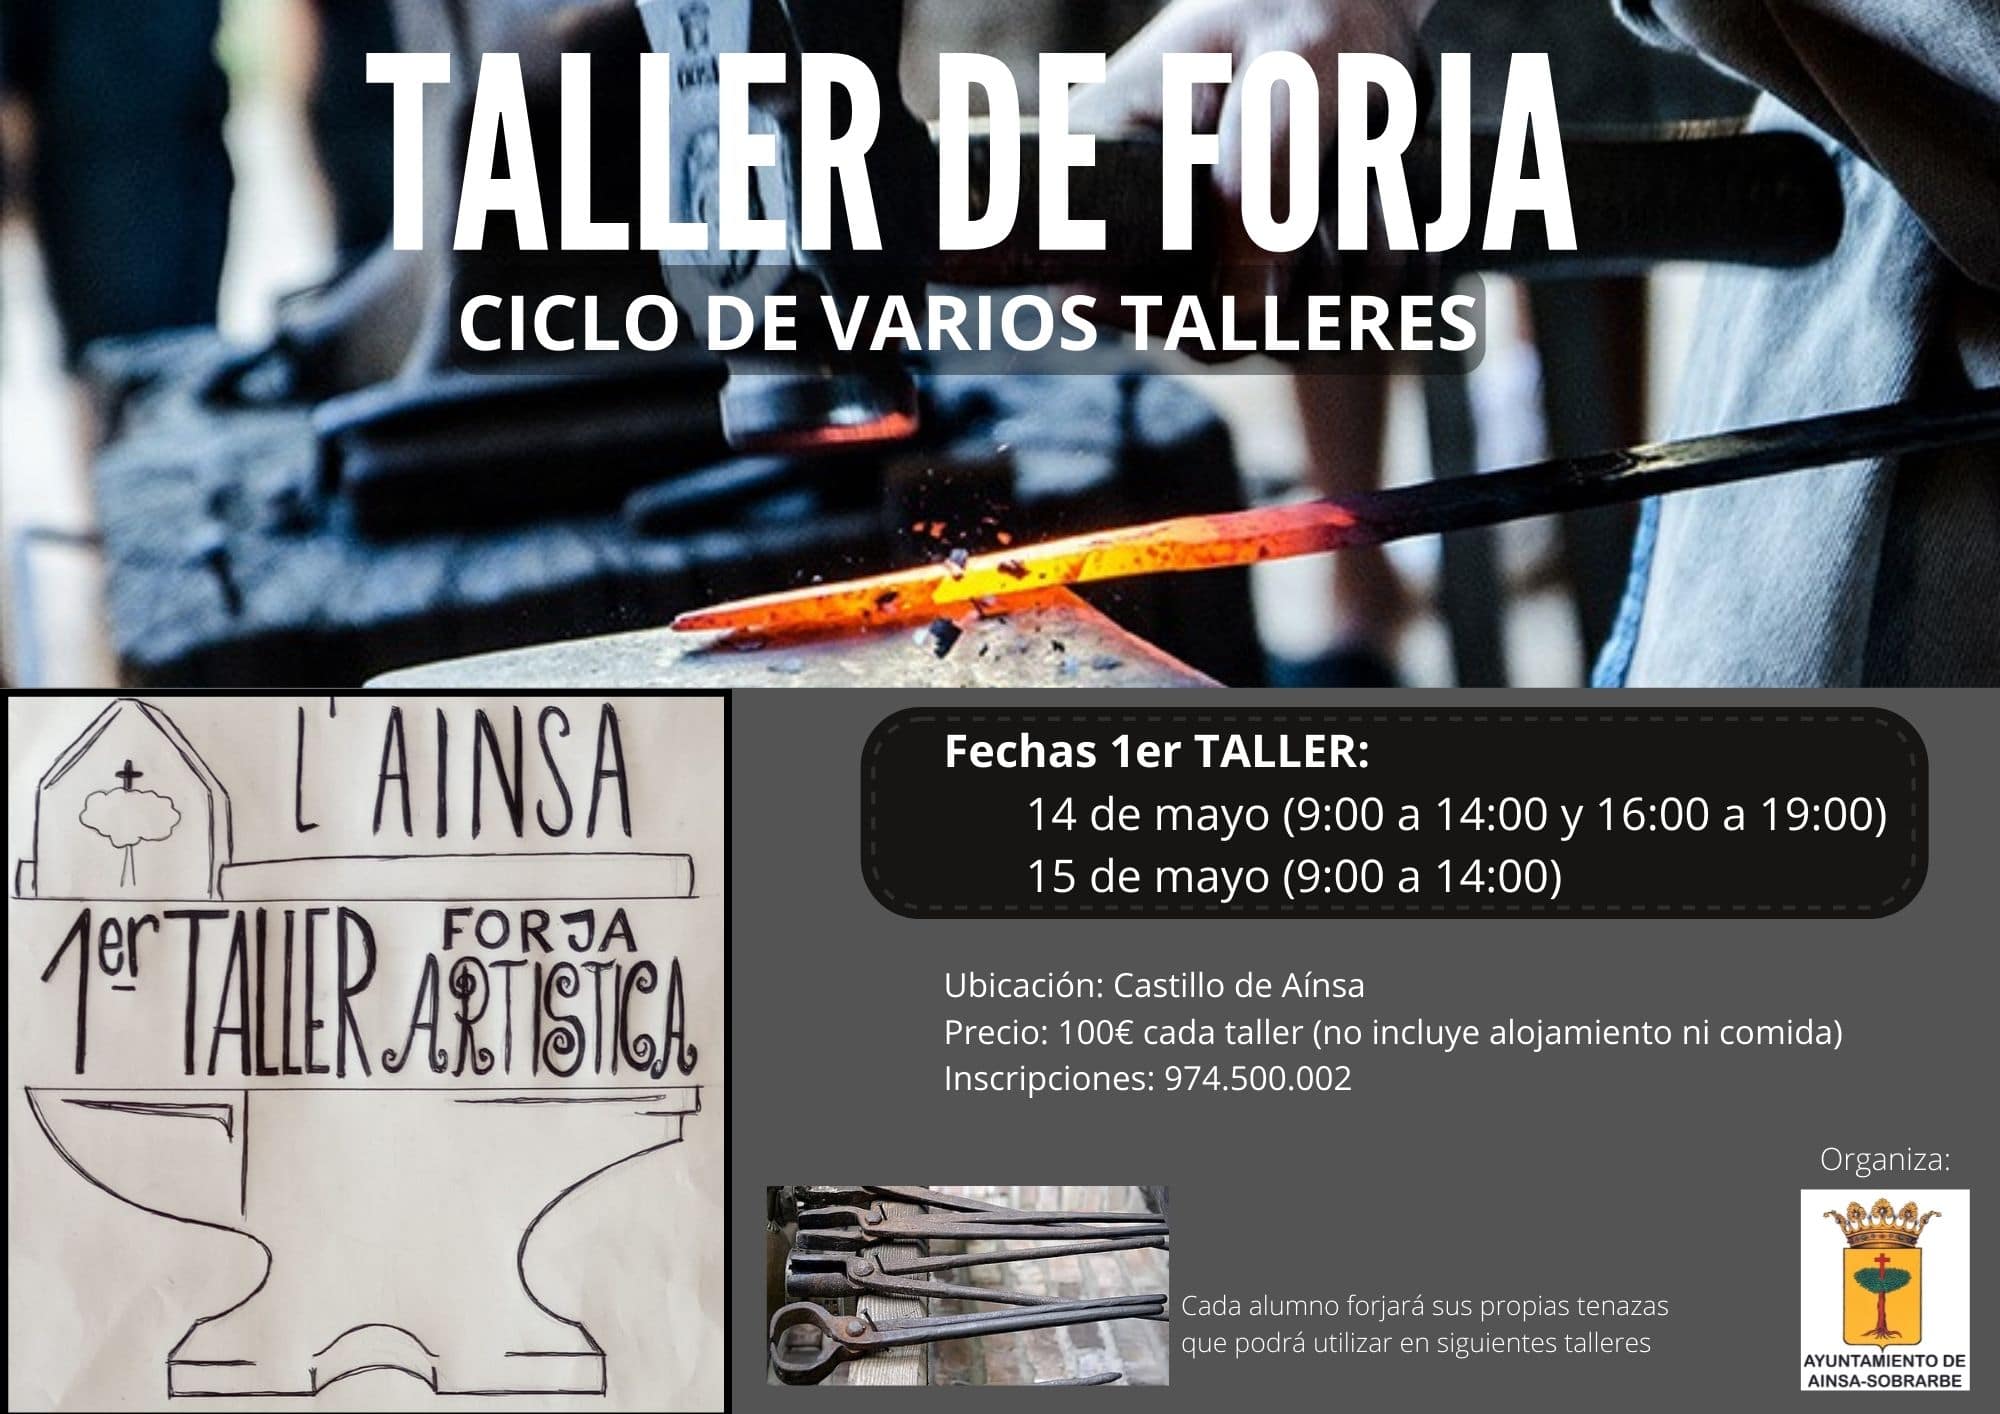 TALLER DE FORJA CICLO DE VARIOS TALLERES 14 Y 15 DE MAYO